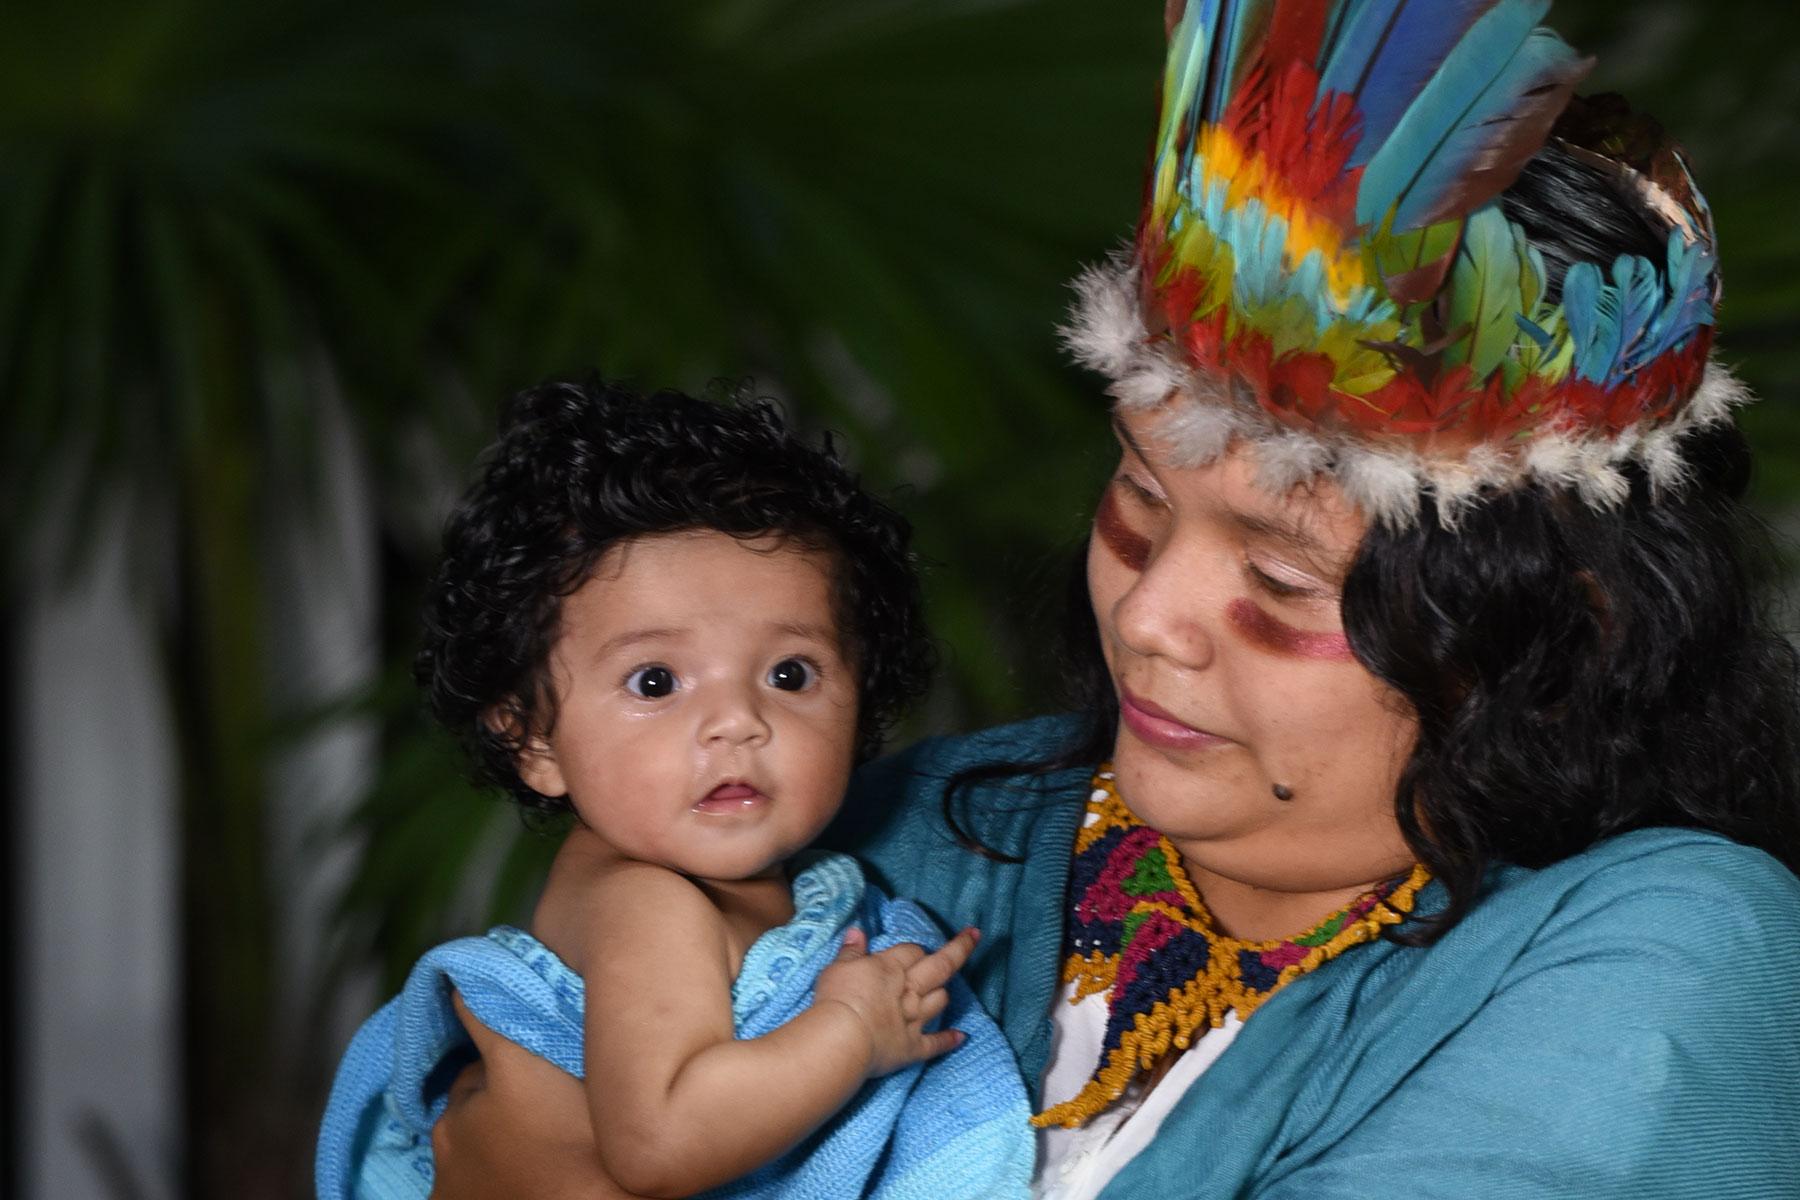 Die diesjährige LWB-Weihnachtskarte zeigt eine indigene Mutter aus Guyana mit ihrem Kind.Foto: Cleveland Bradford/Eclipse Digitalphoto Studio